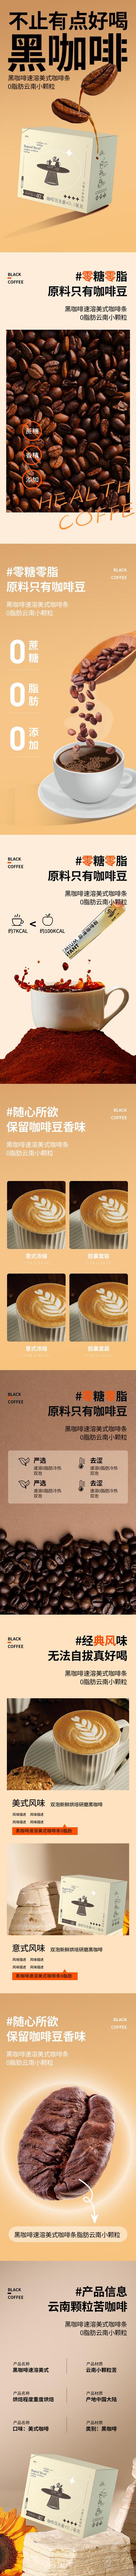 南门网 广告 海报 电商 咖啡 饮料 详情页 品质